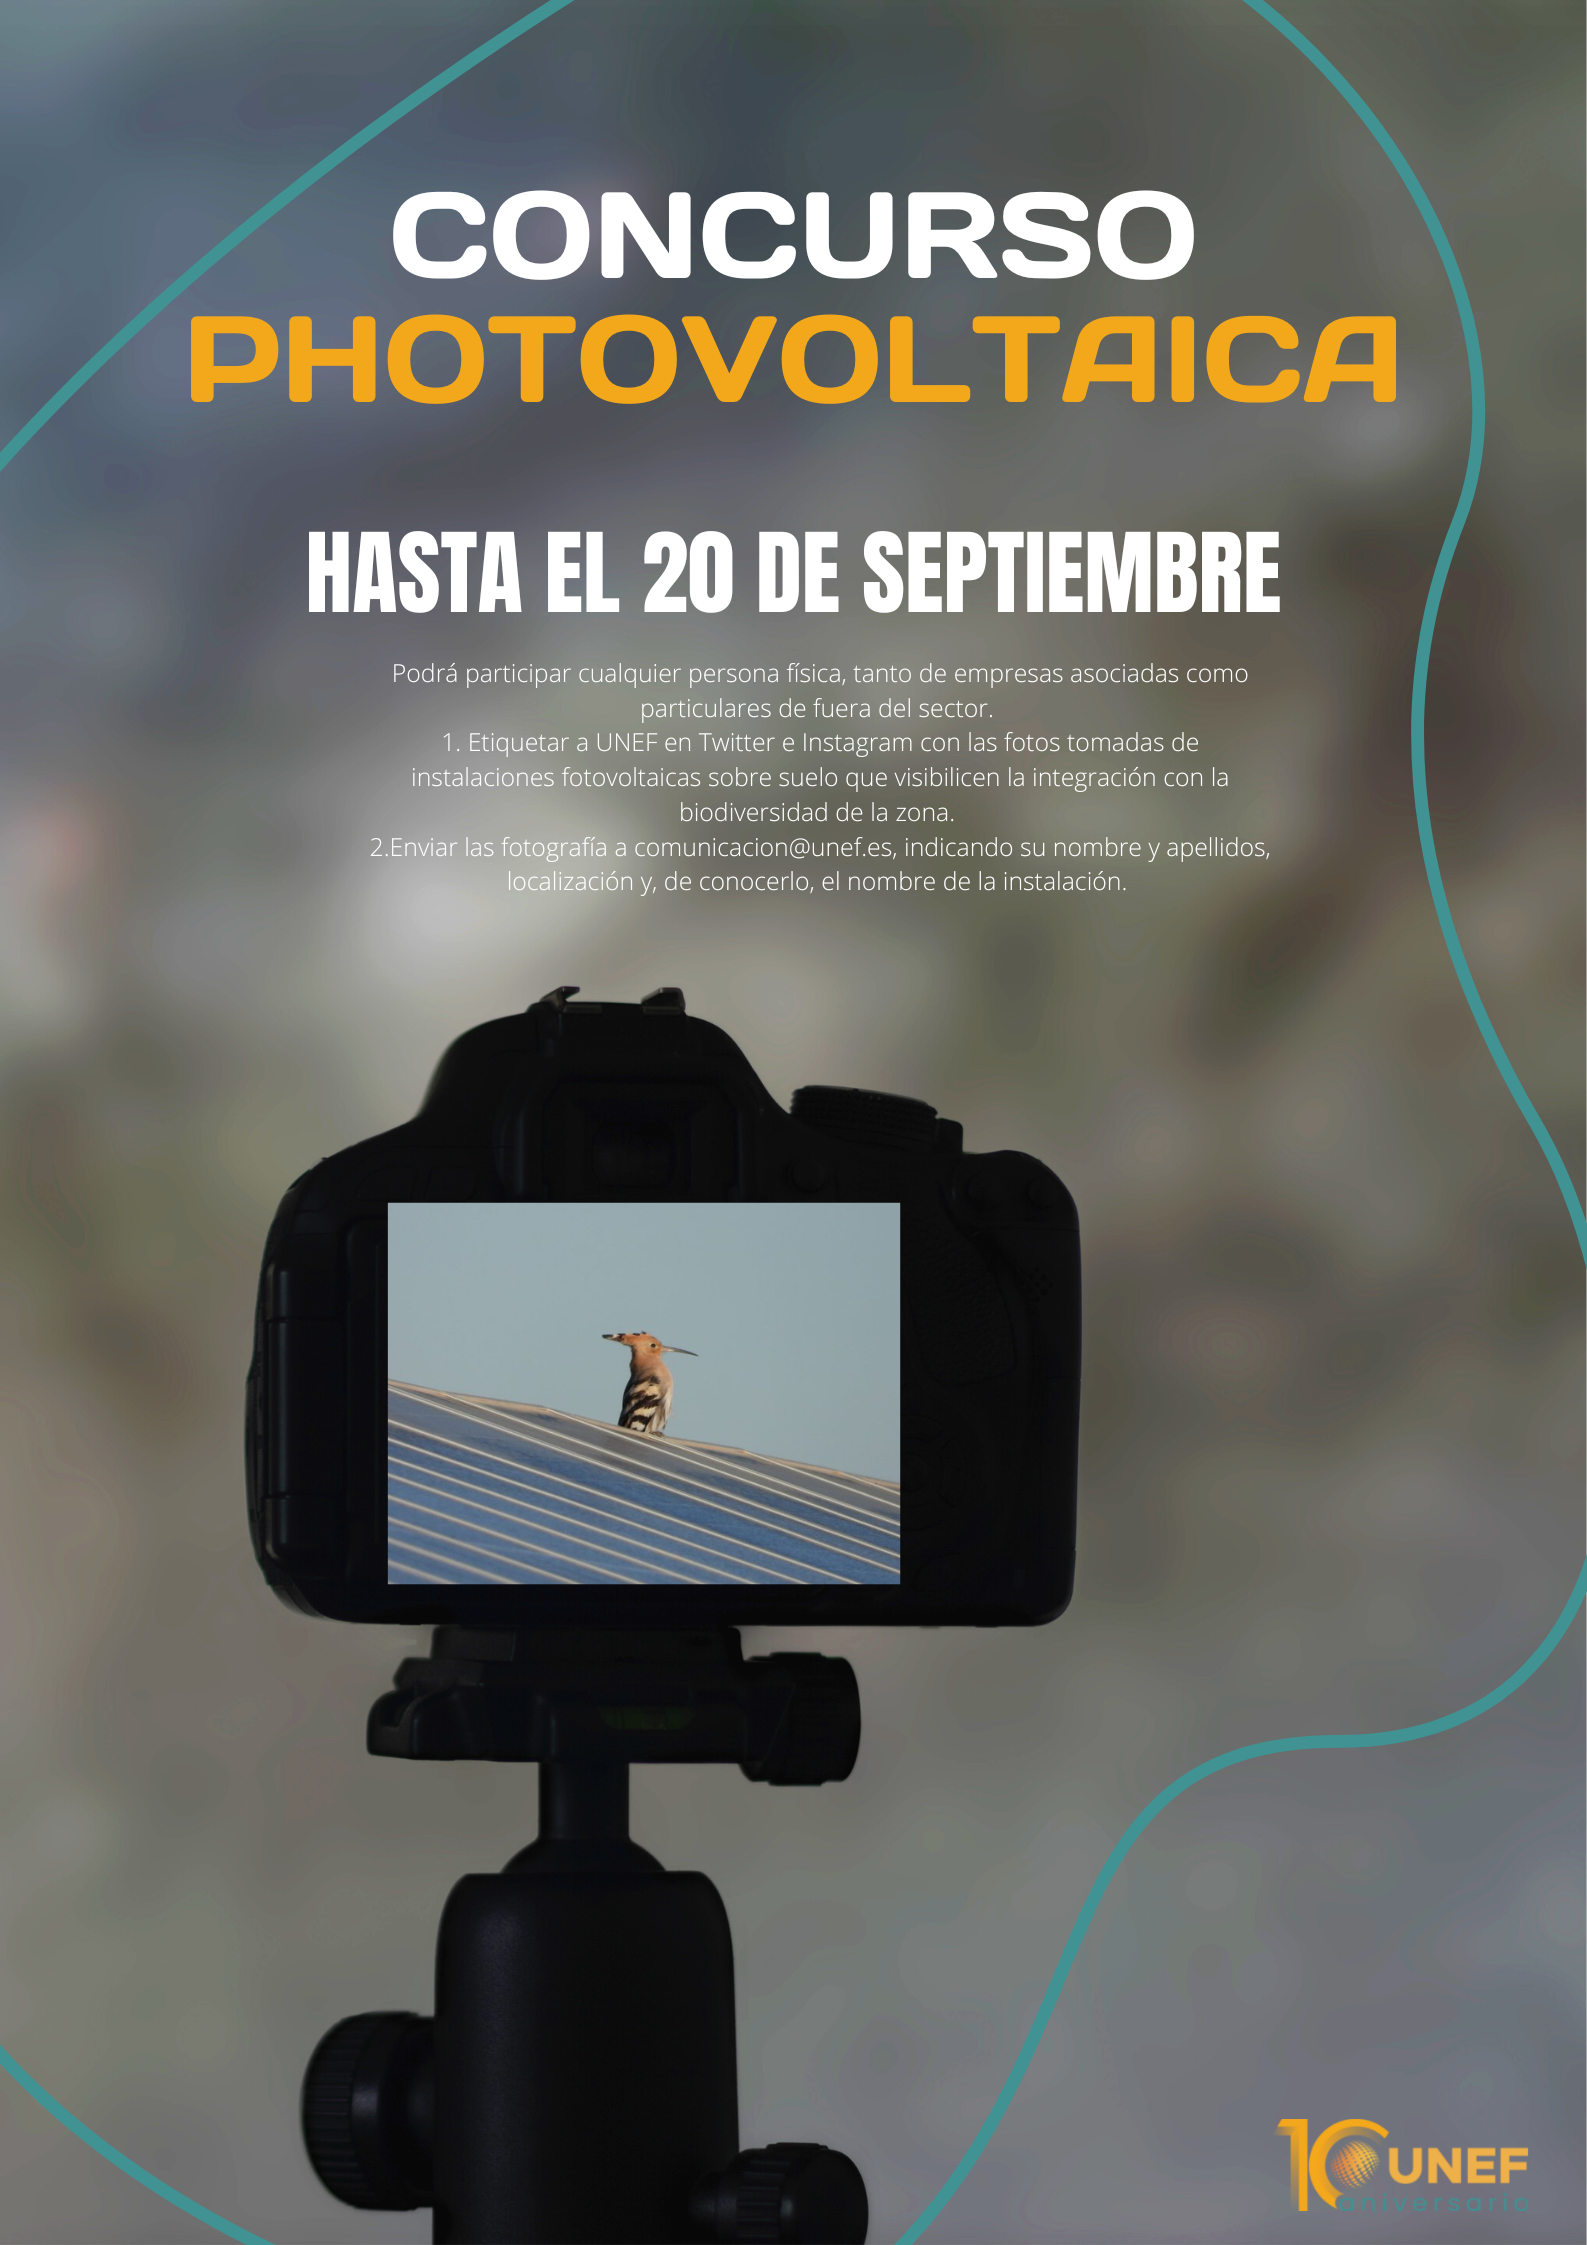 II Concurso de Fotografía PHOTOvoltaica de UNEF